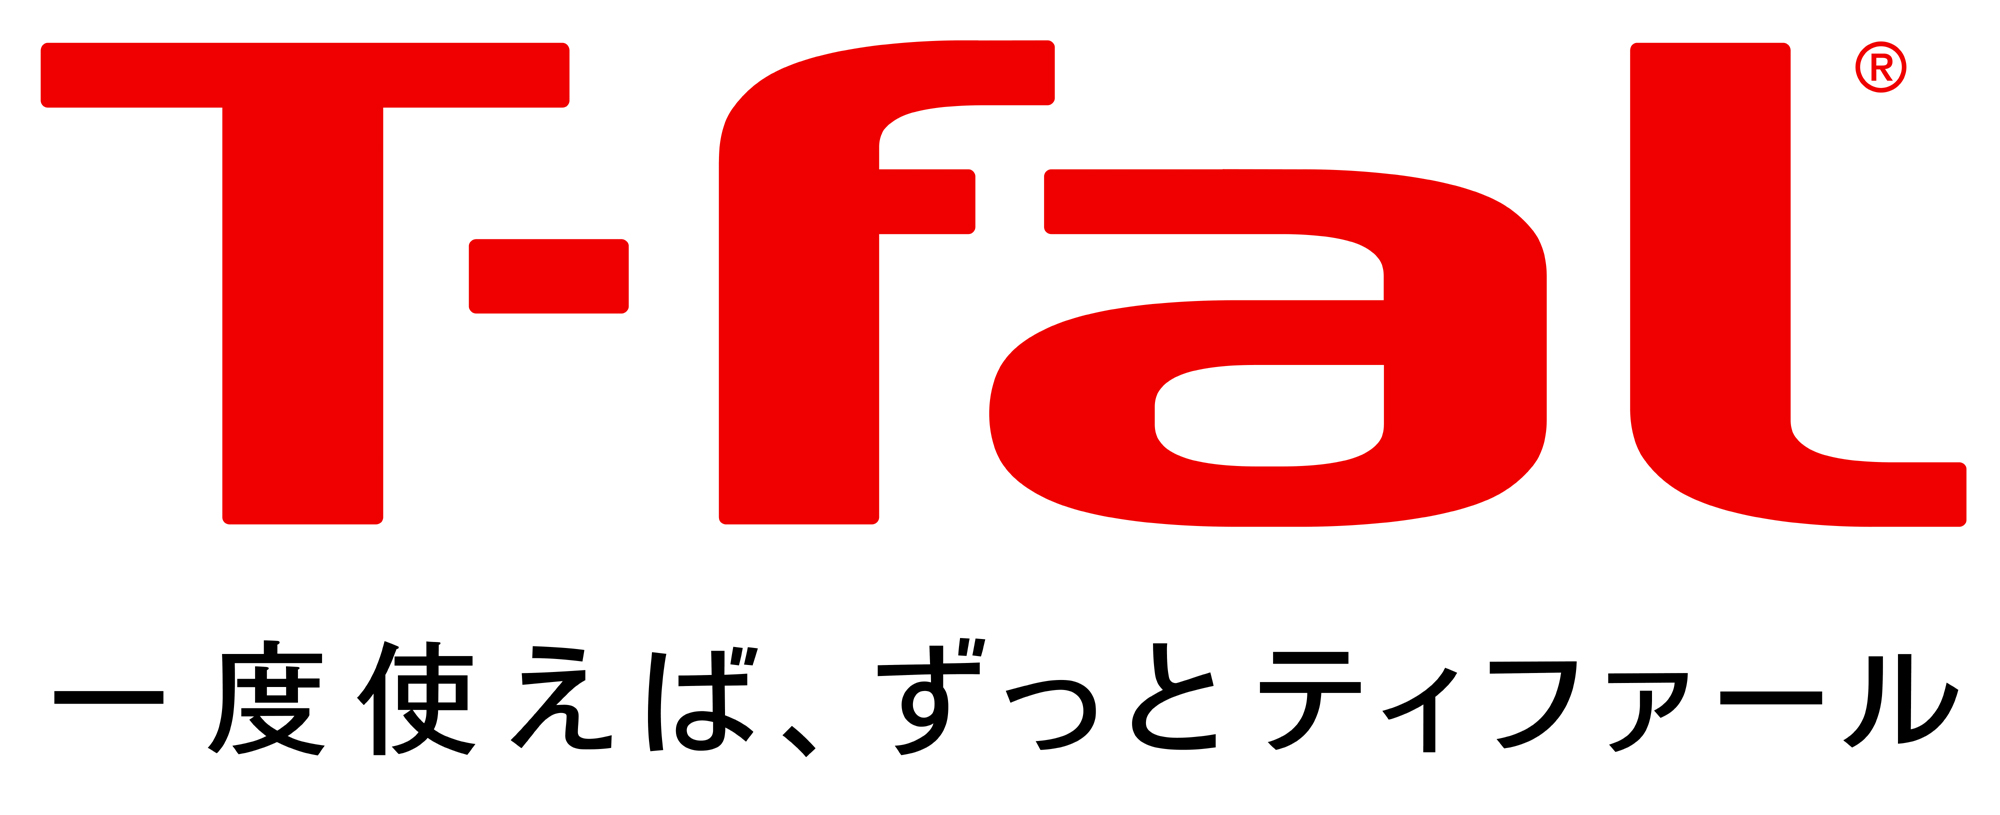 T-FAL Logo photo - 1